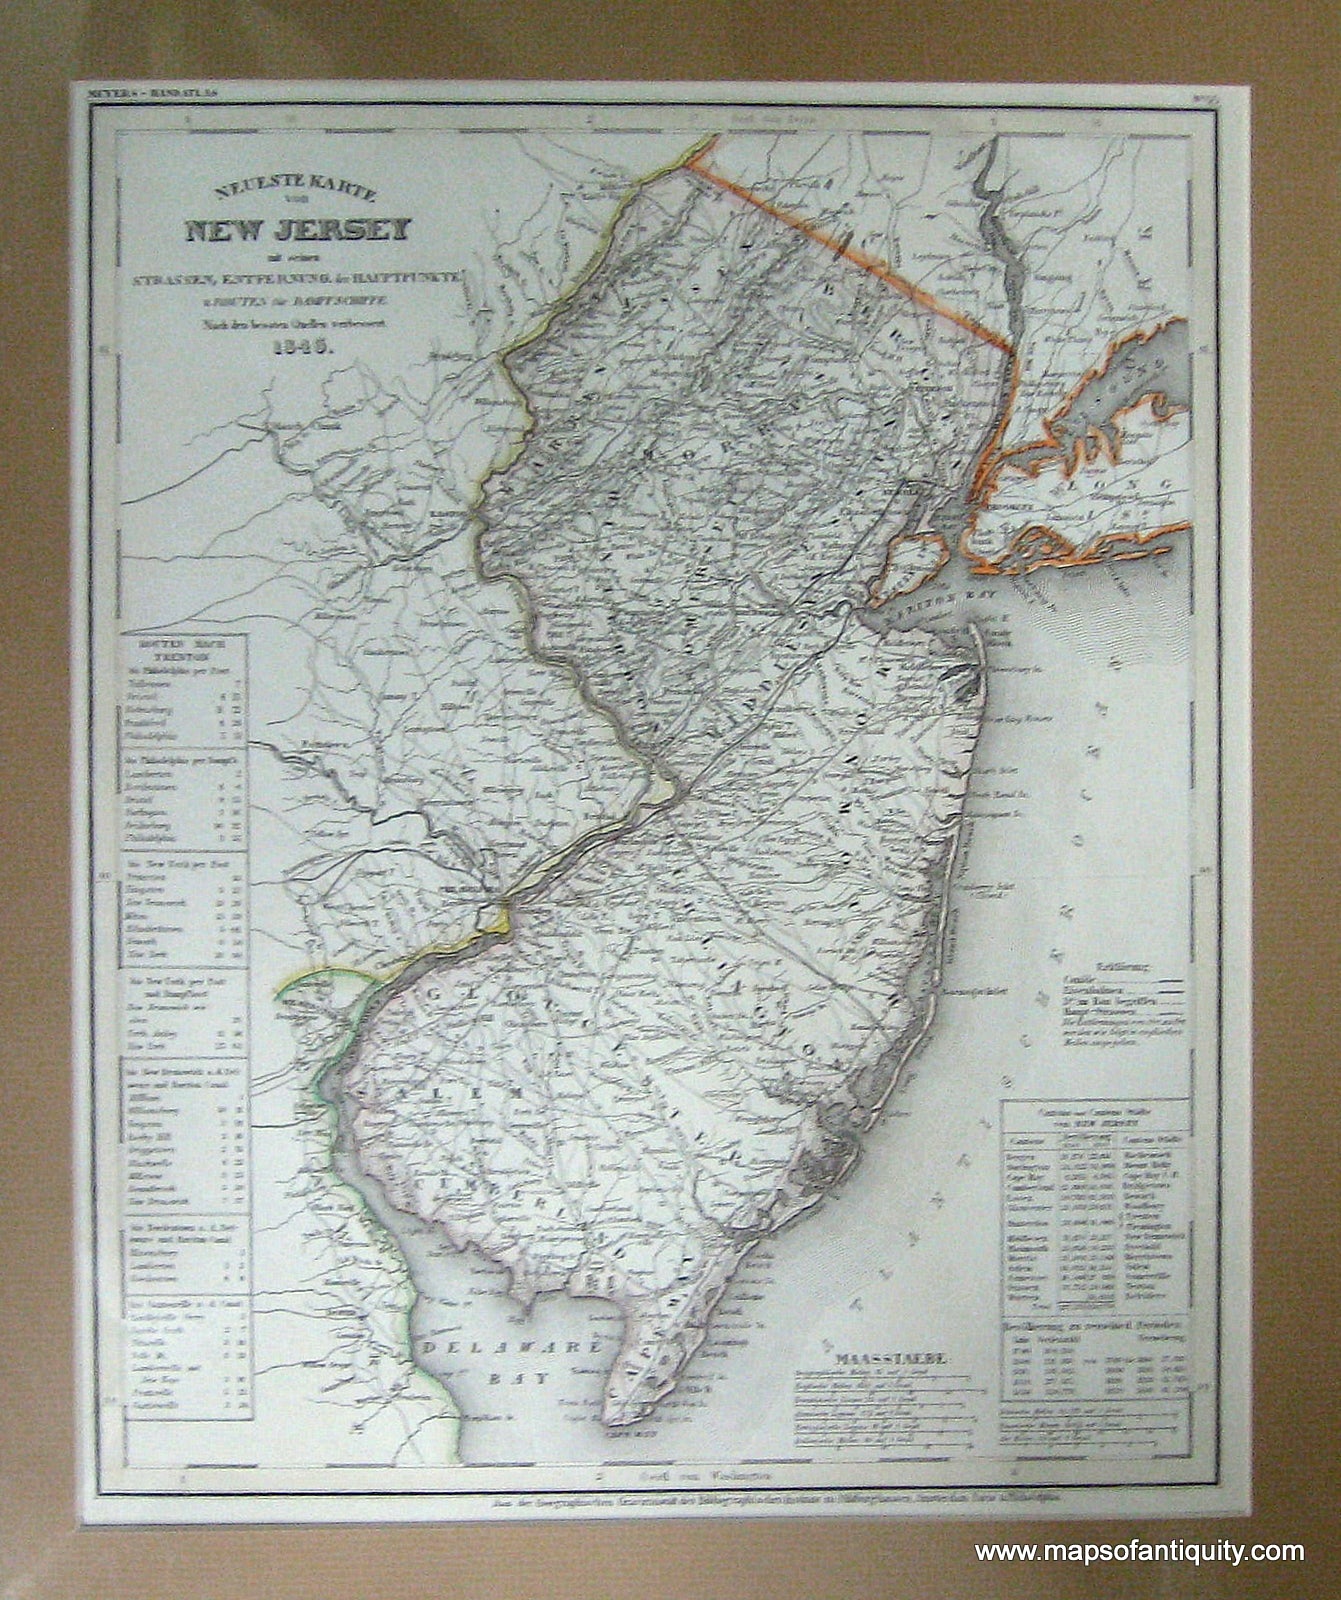 Antique-Hand-Colored-Map-Neueste-Karte-von-New-Jersey-mit-seinen-Strassen-Entfernung-der-Hauptpunkte-u.-Routen-fur-Dampfschiffe.--Northeast-1846-Meyer-Maps-Of-Antiquity